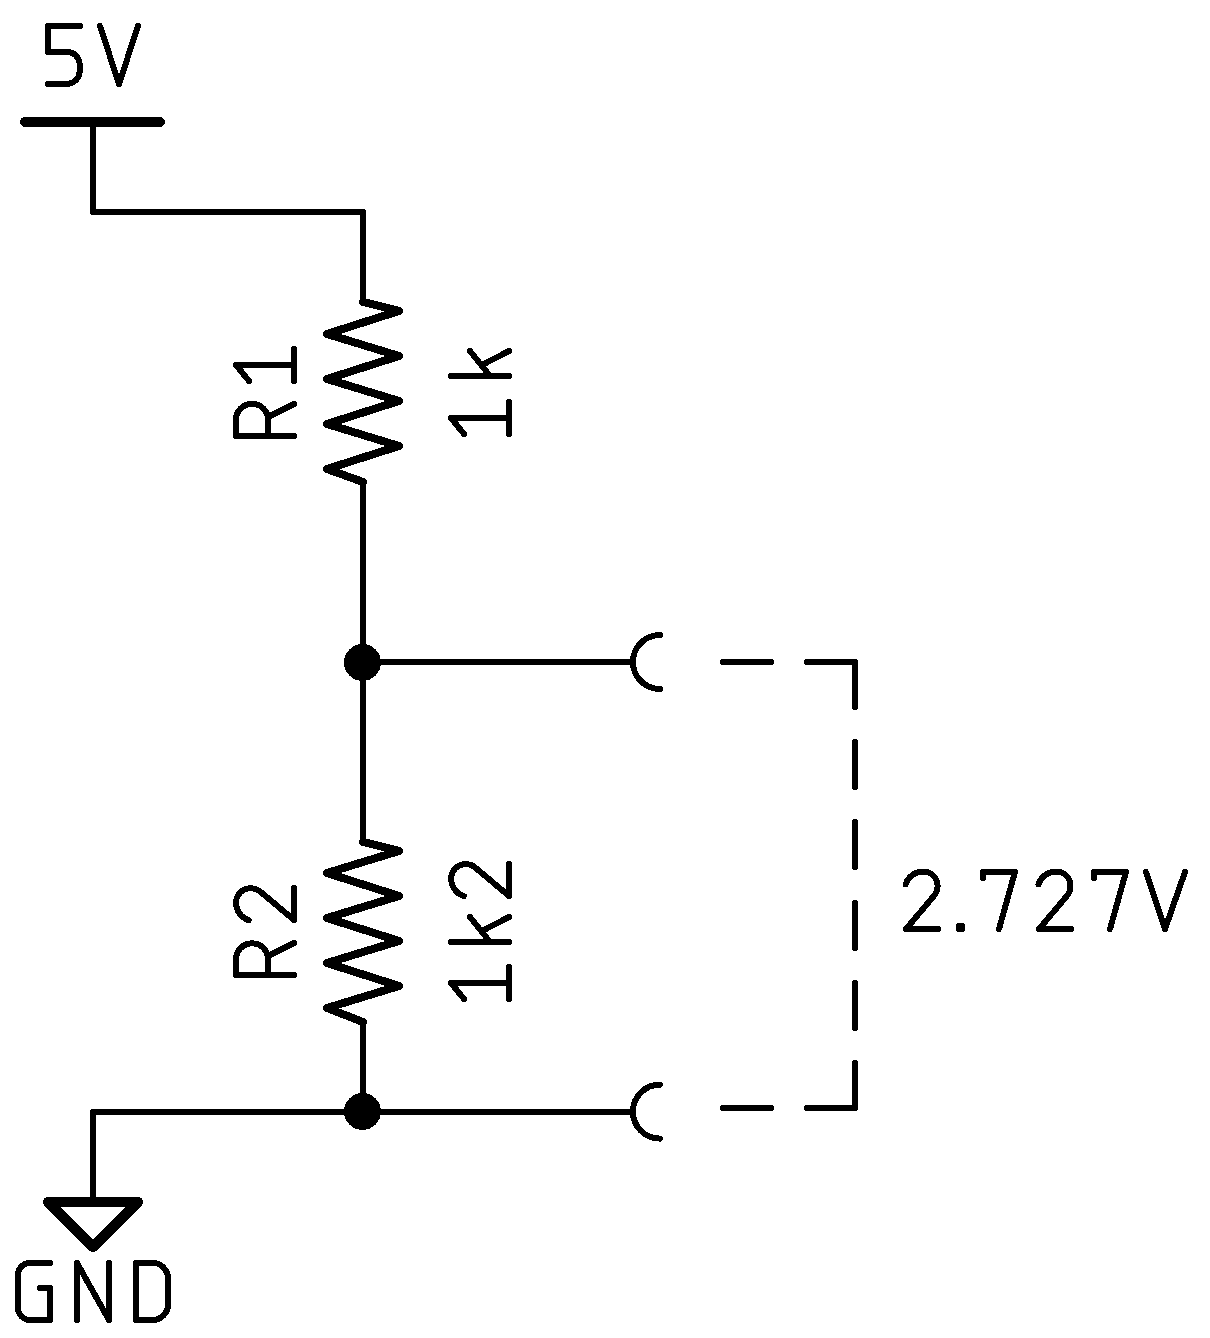 Schematic showing a voltage
divider